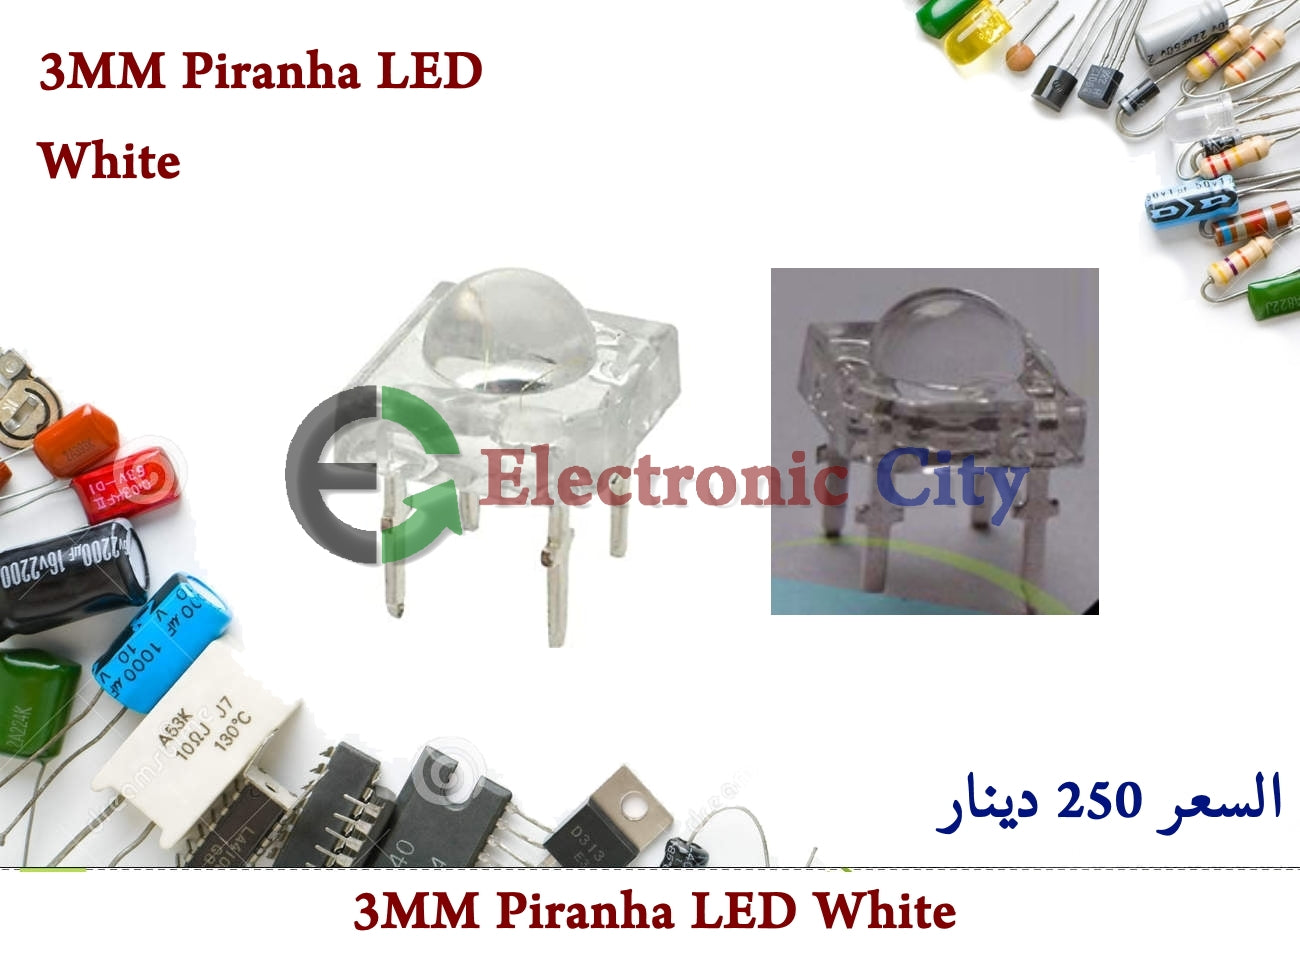 3MM Piranha LED White